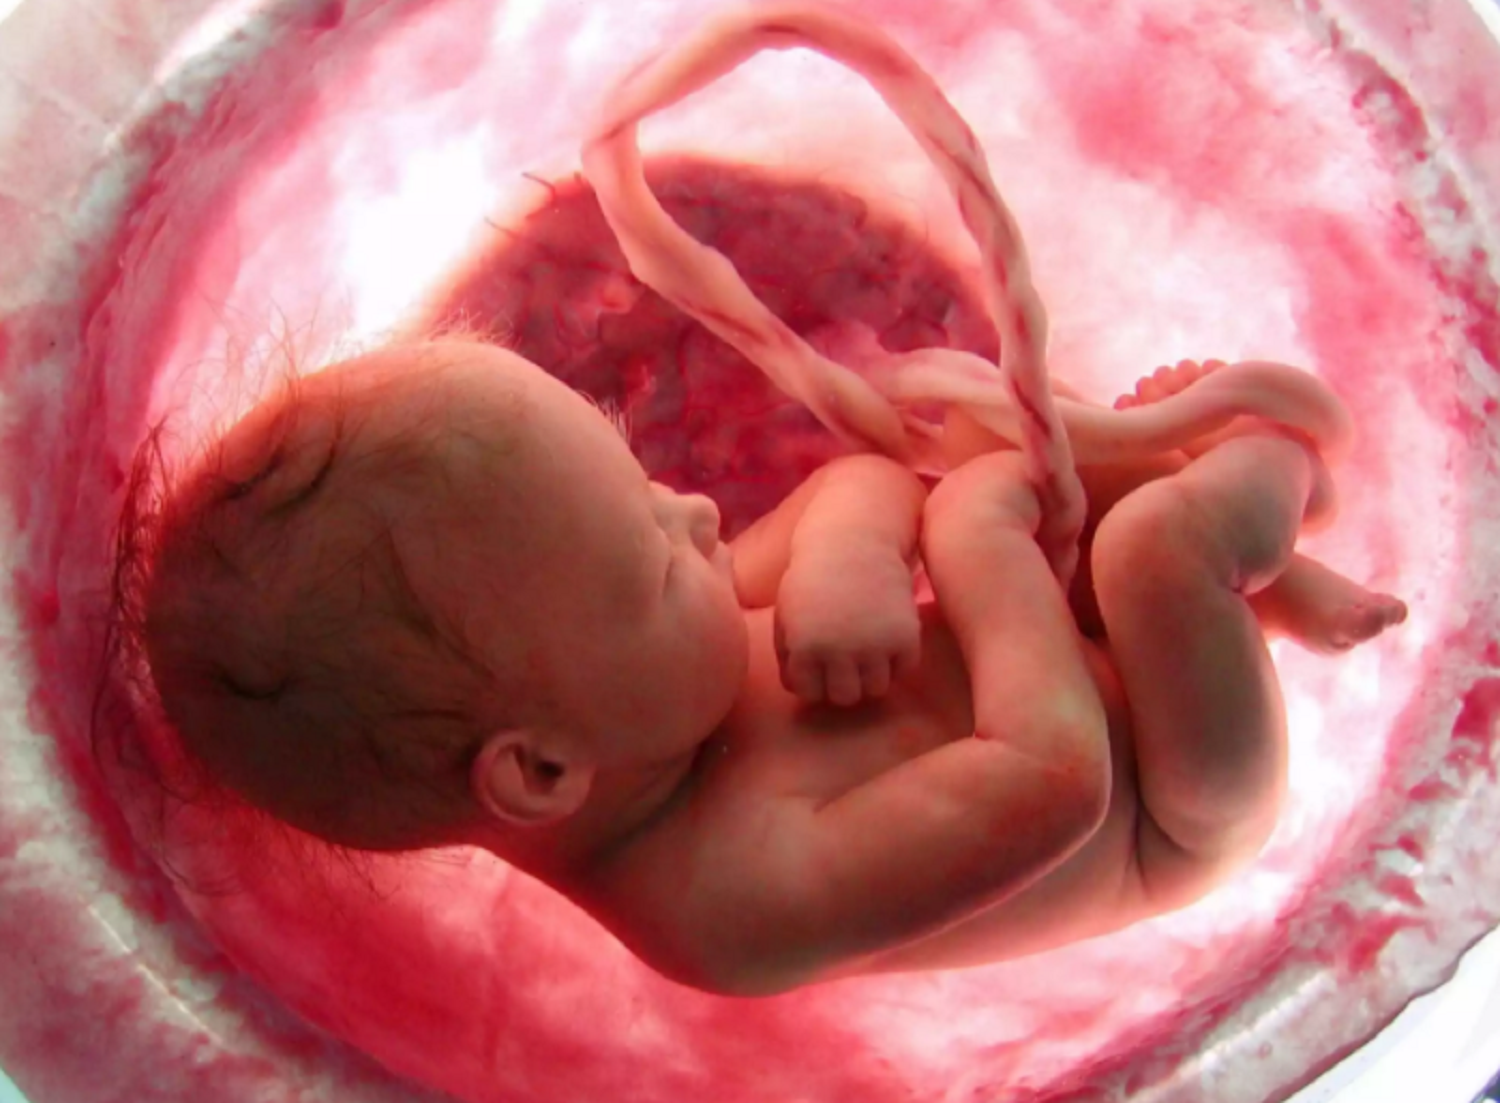 Πώς μεγαλώνει το έμβρυο στην κοιλιά της μαμάς; 9 μήνες μέσα σε 4 λεπτά! (βίντεο)